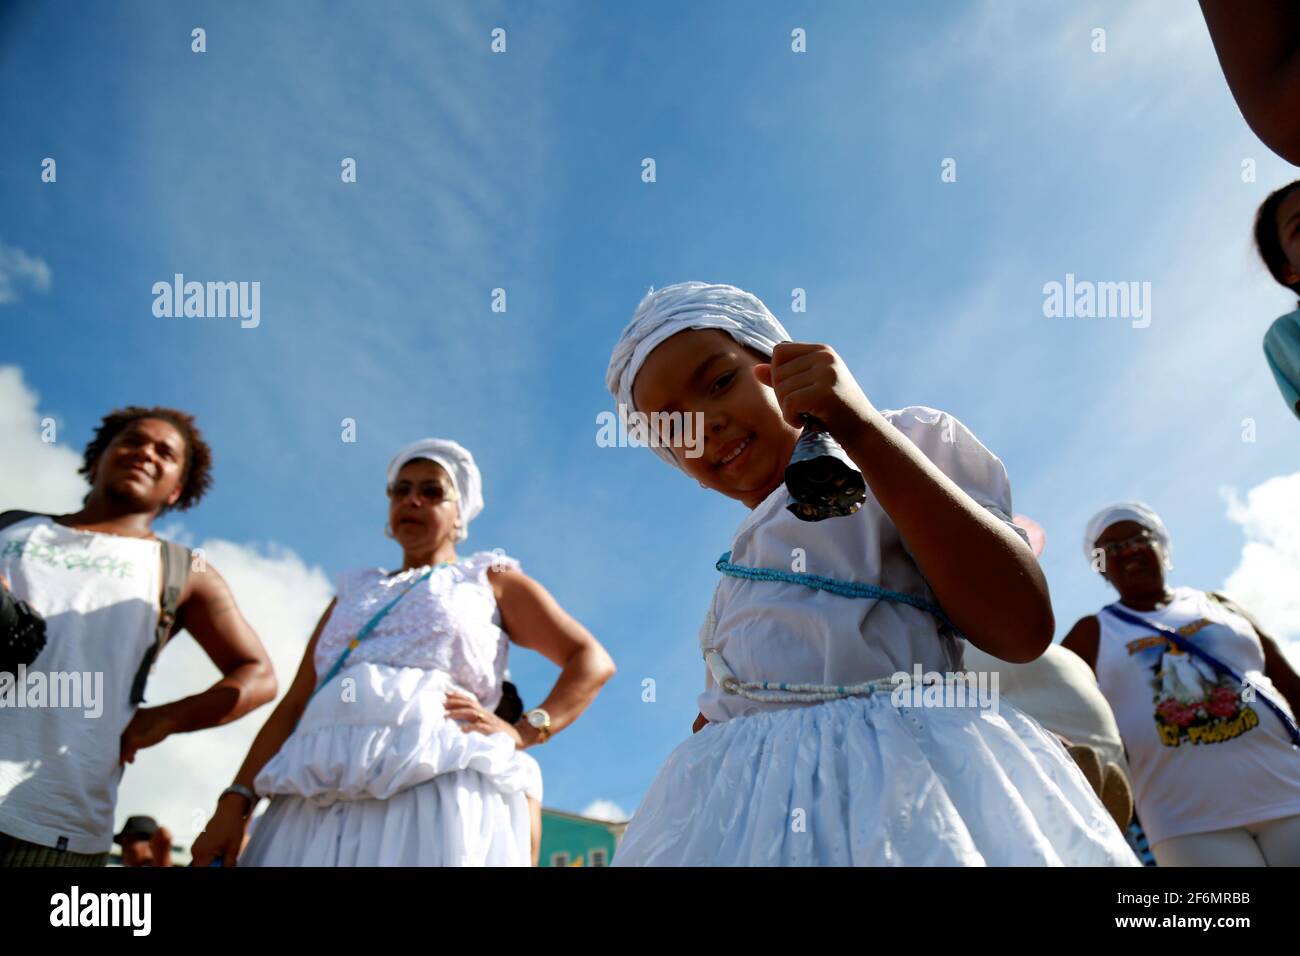 salvador, bahia / brésil - 2 février 2015: Les supporters de candomble sont vus sur la plage Rio Vermelho dans la ville de Salvador lors d'une fête à hono Banque D'Images